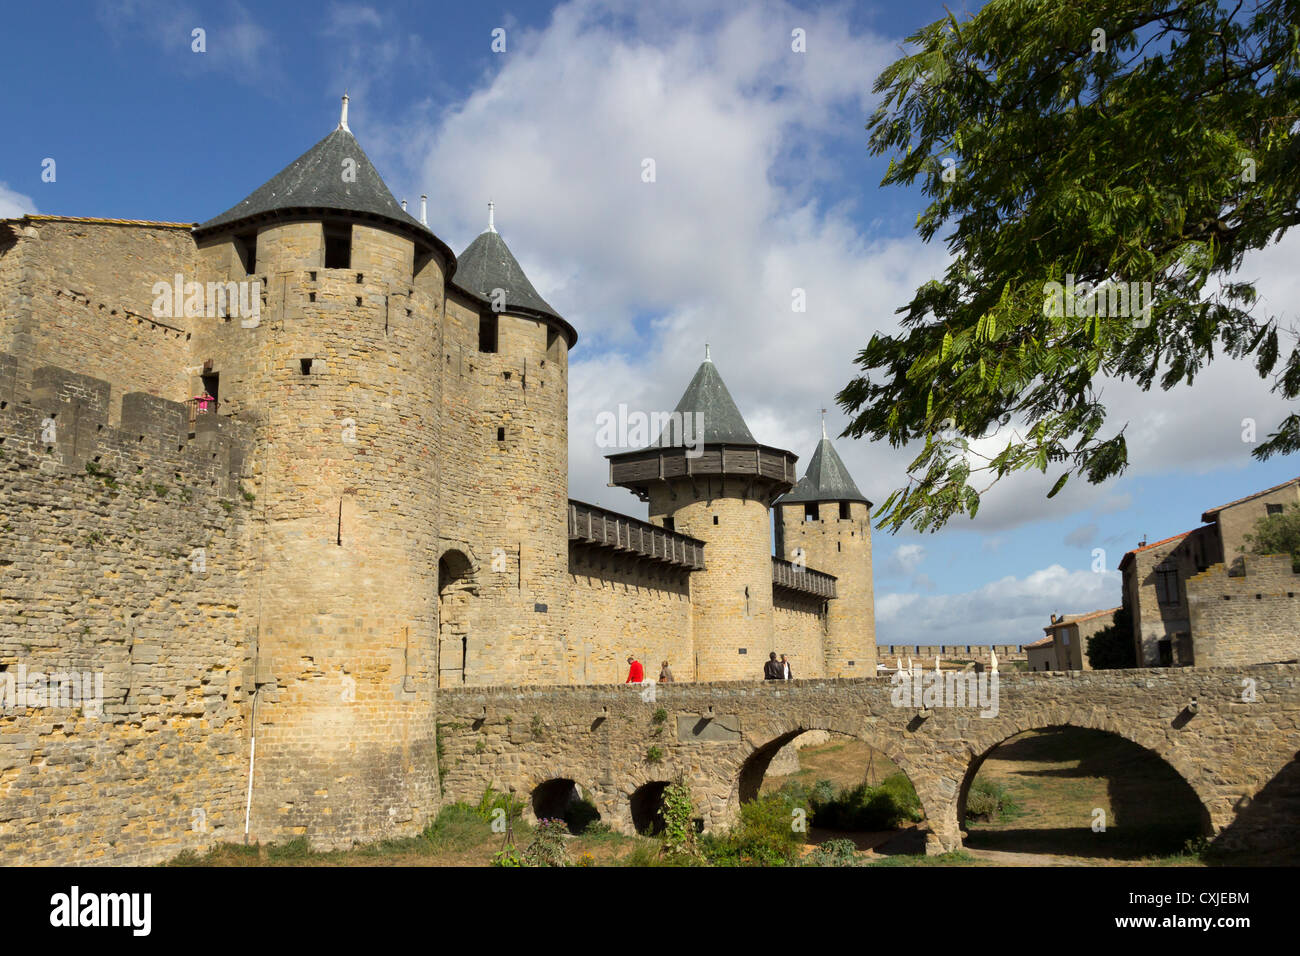 La ville médiévale de Carcassonne, La Cité, Château Comtal, Aud, Roussillon, Languedoc, France Banque D'Images